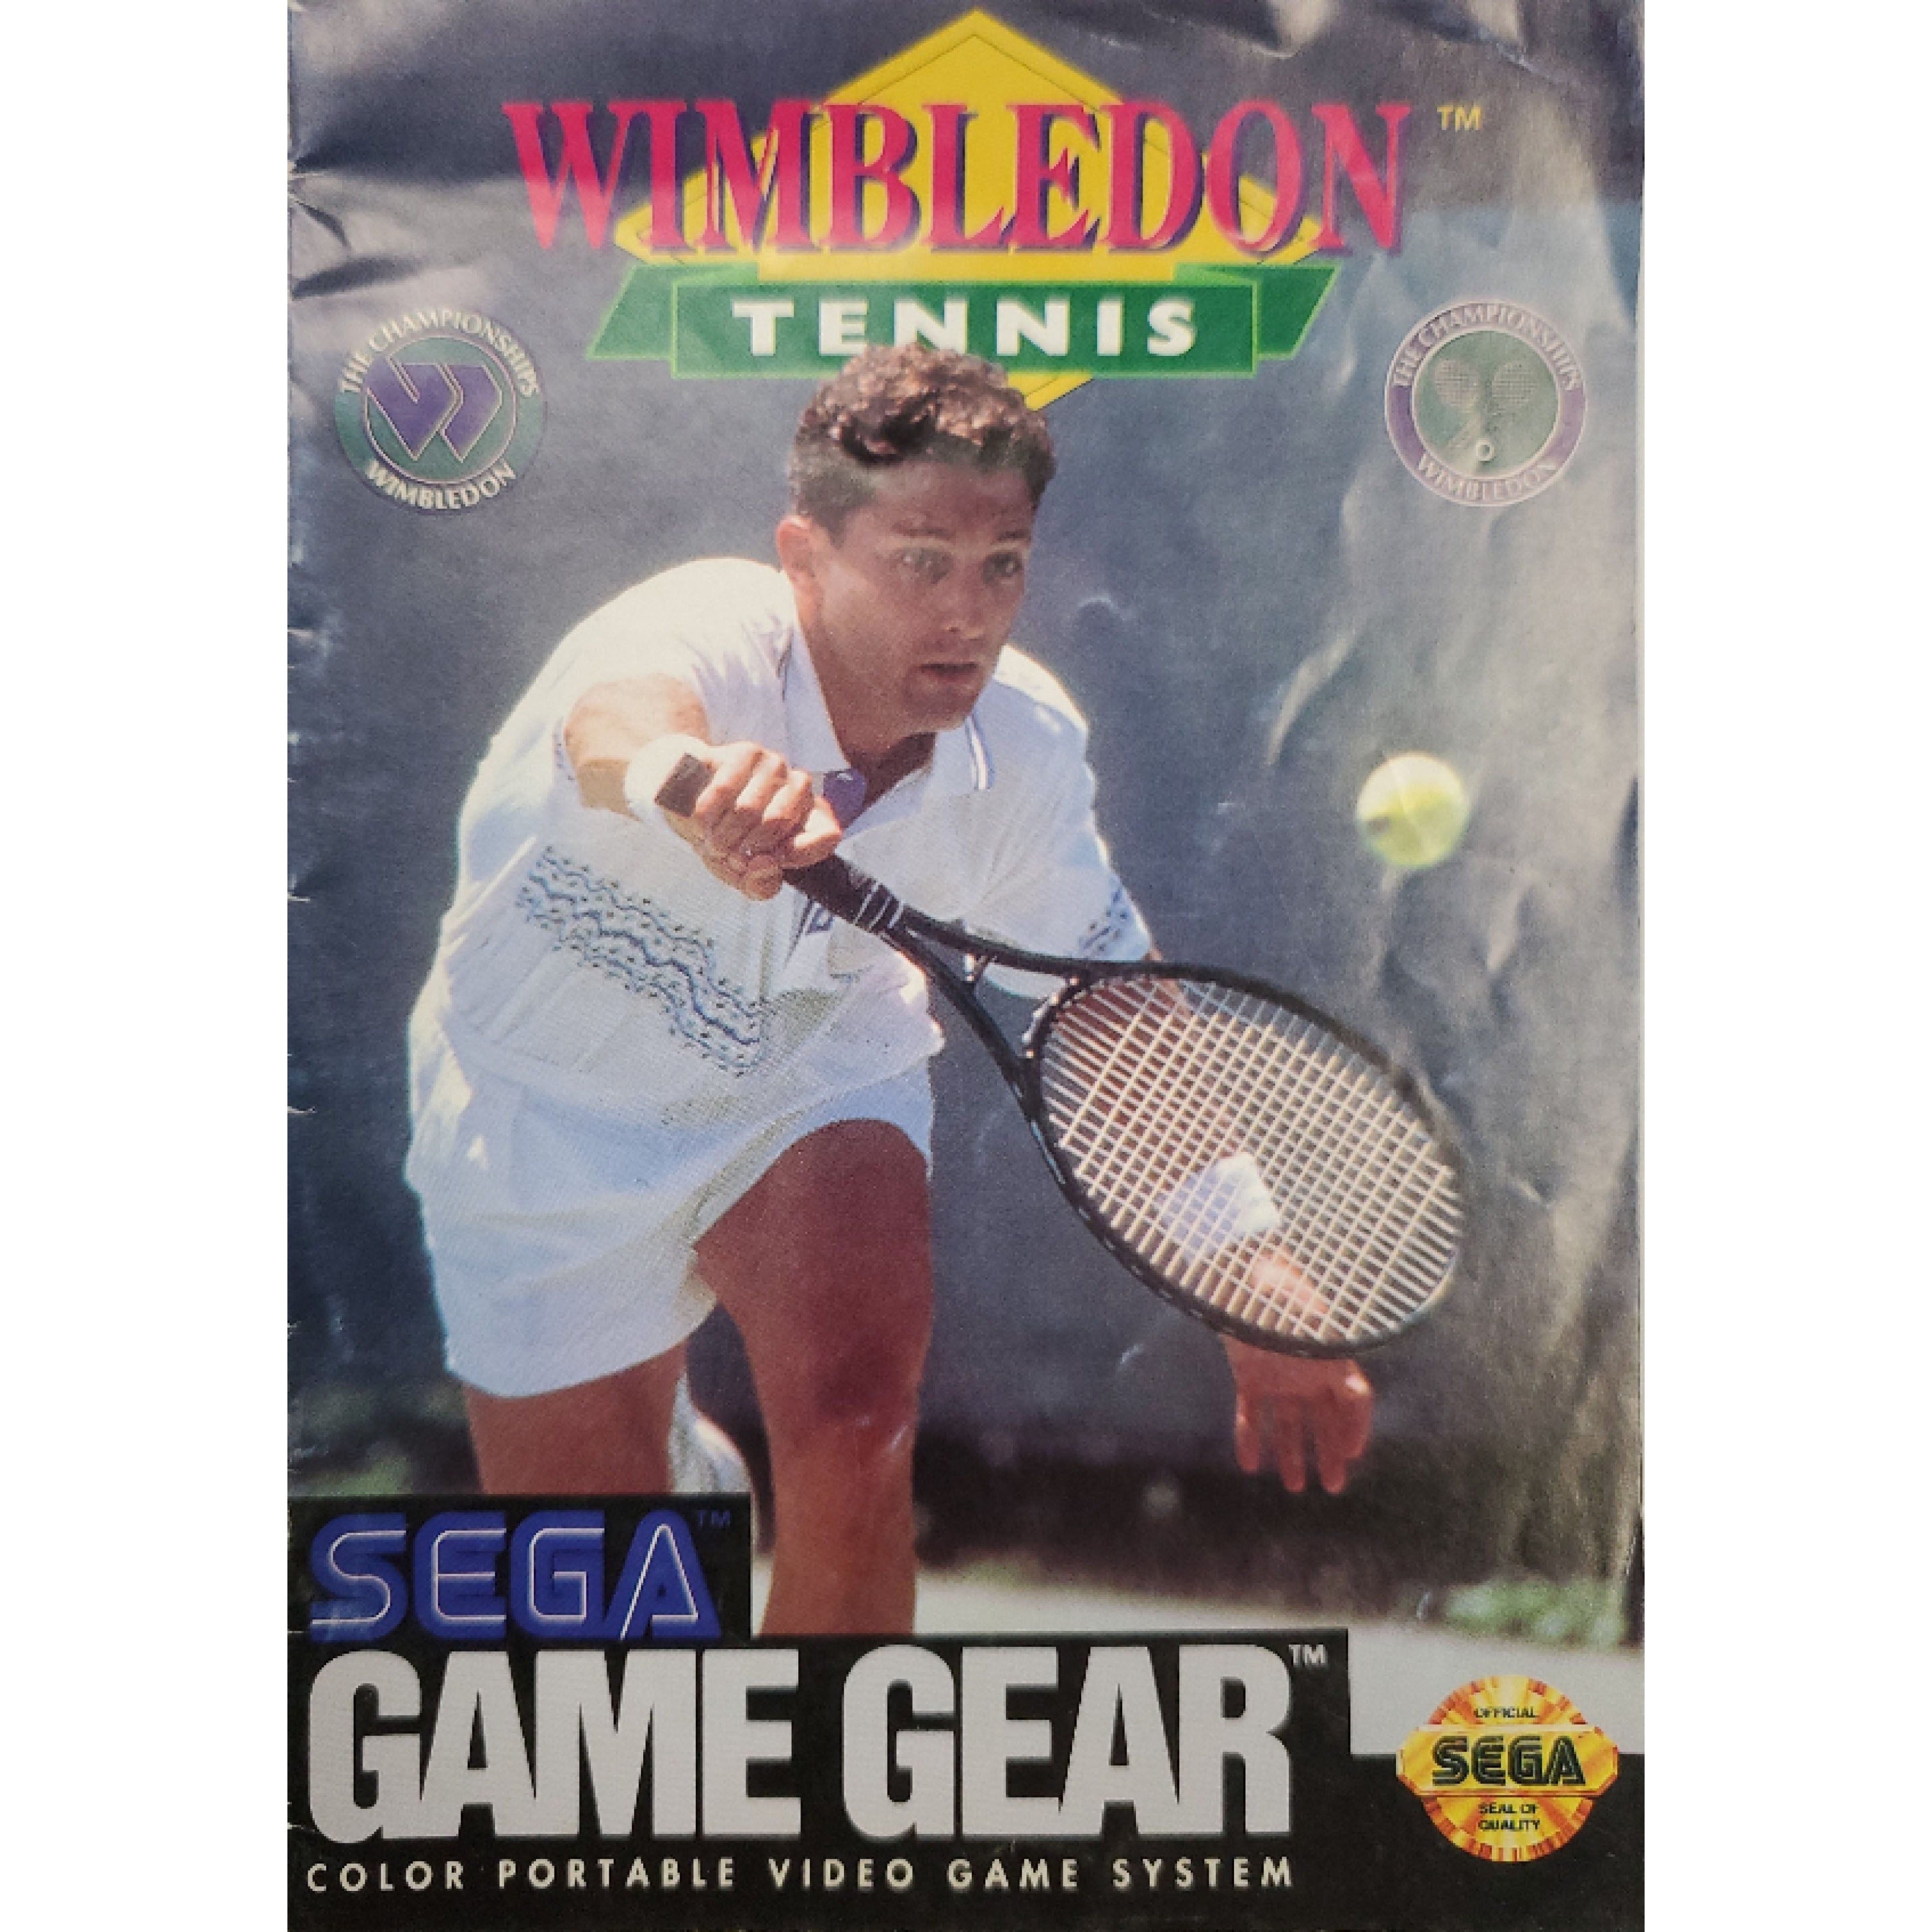 GameGear - Wimbledon Tennis (Manual)